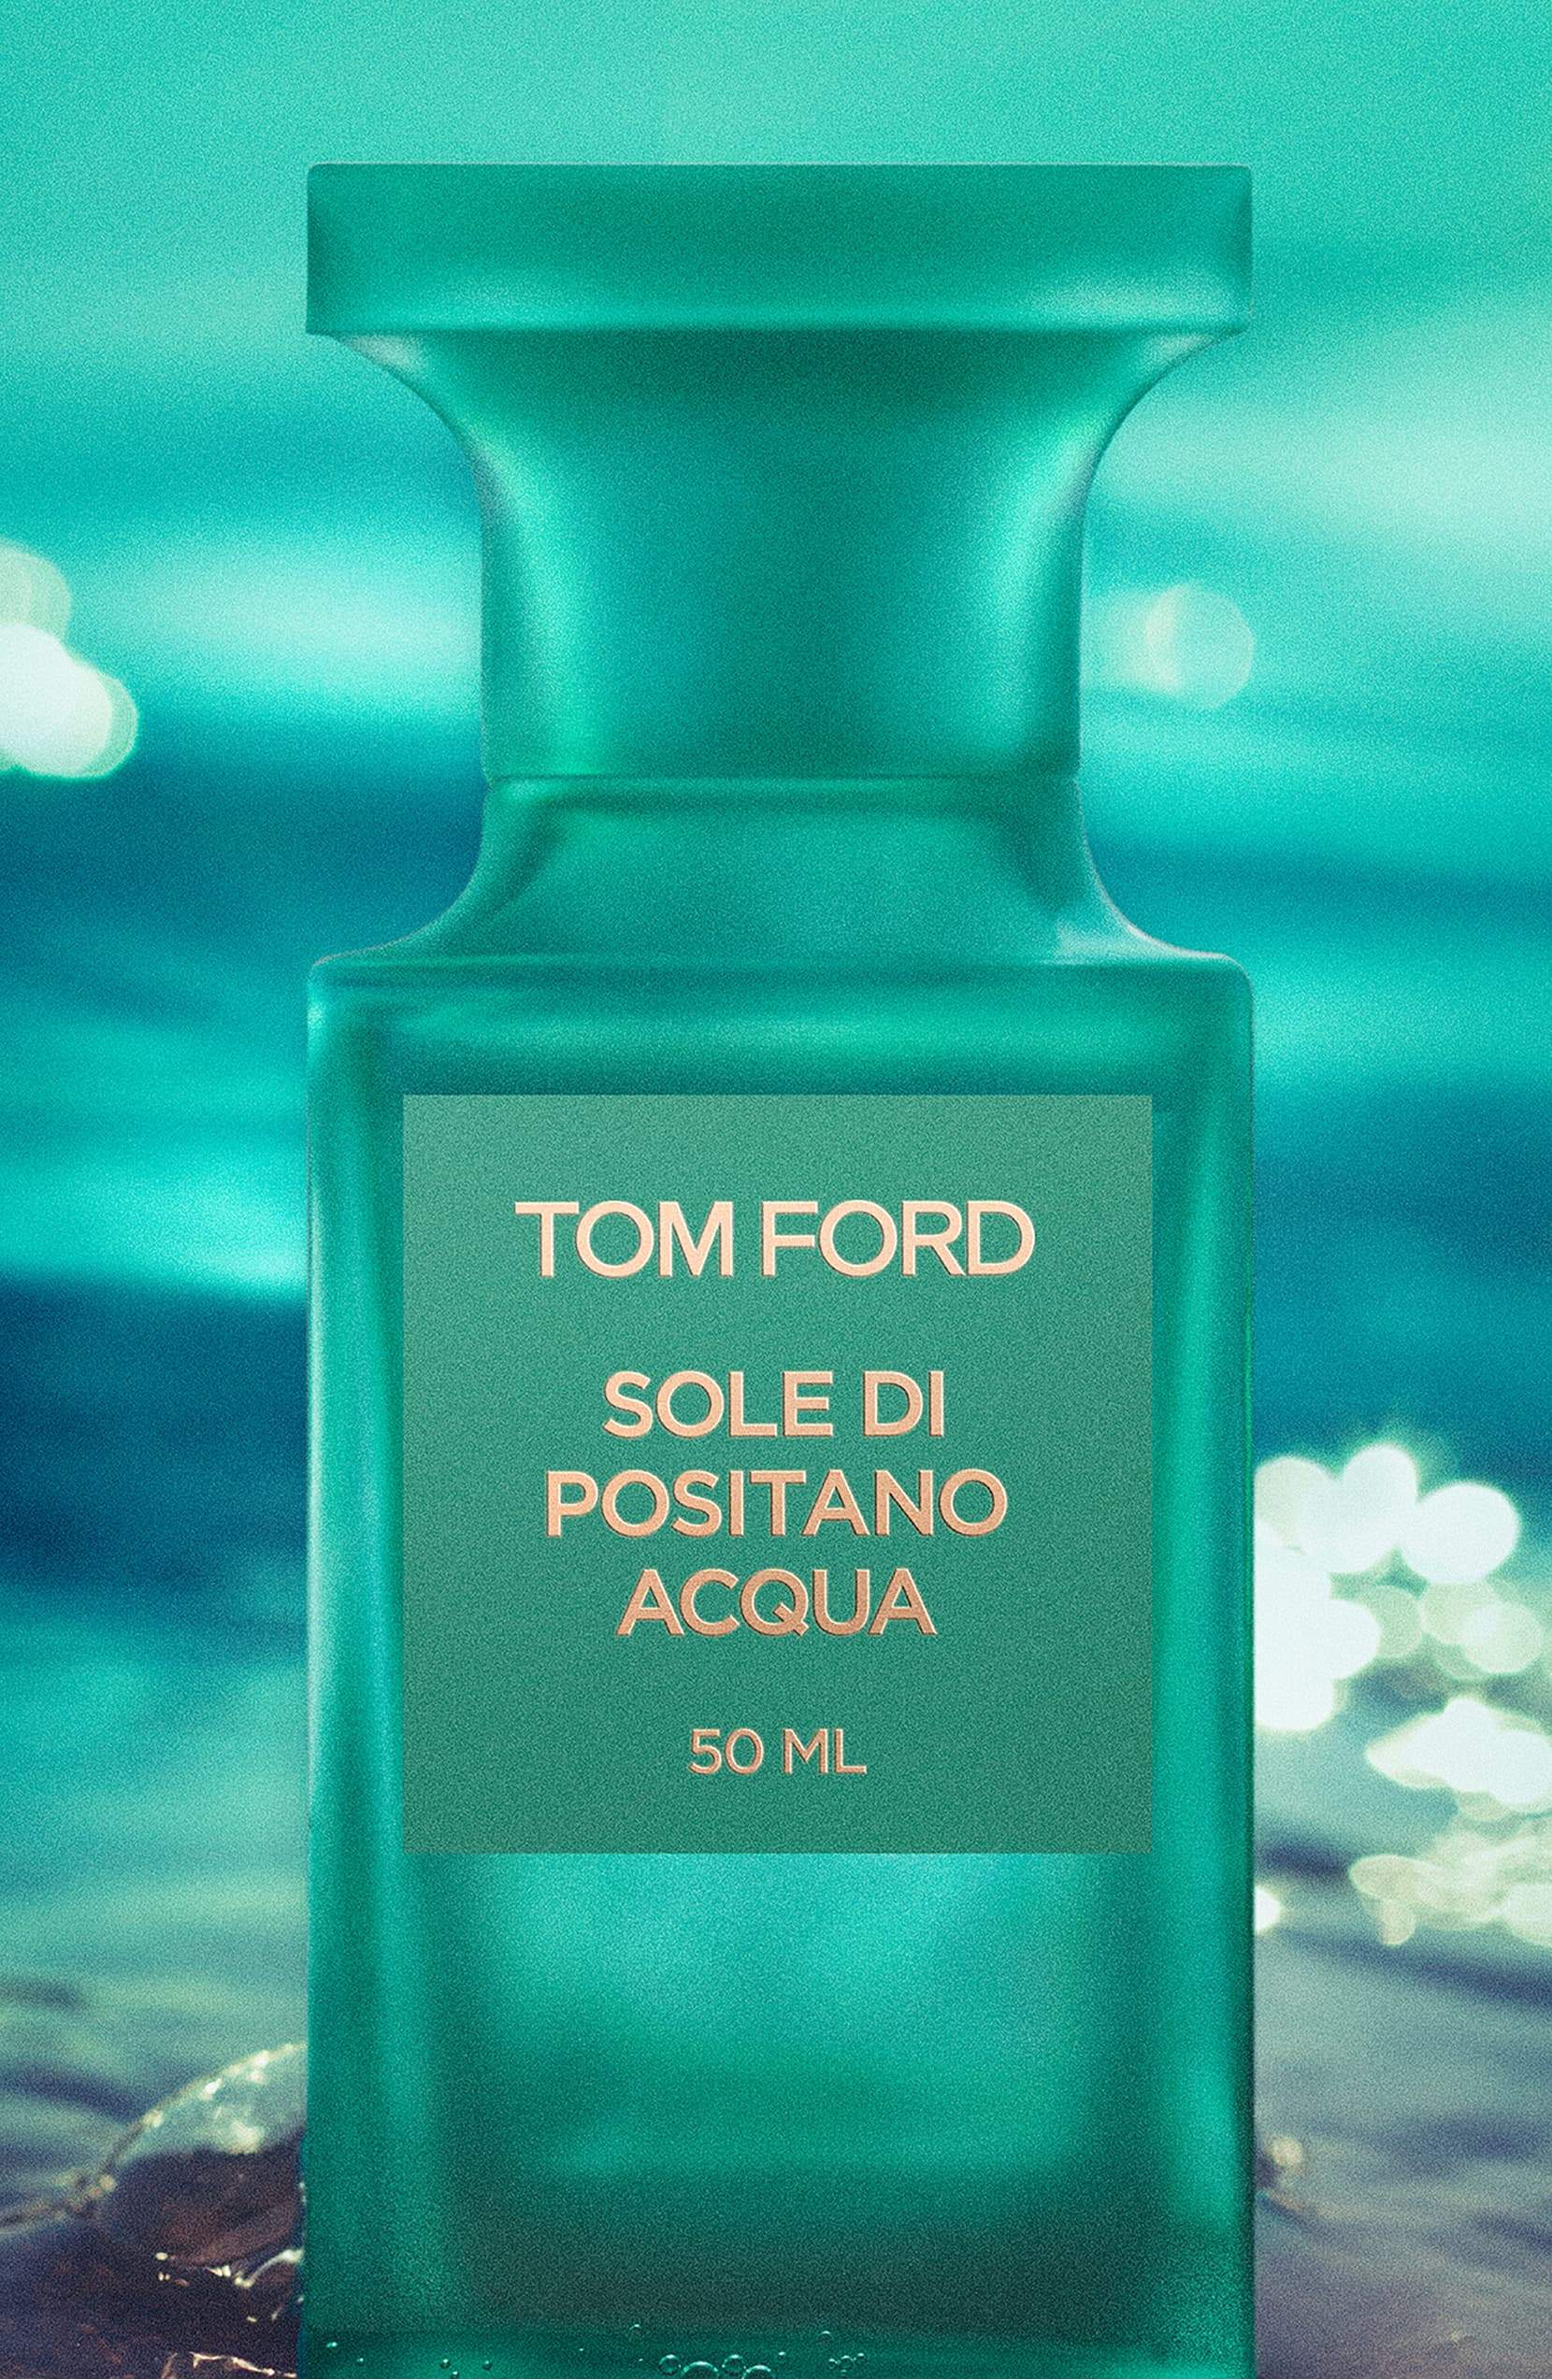 TOM FORD Sole di Positano Acqua 100ML